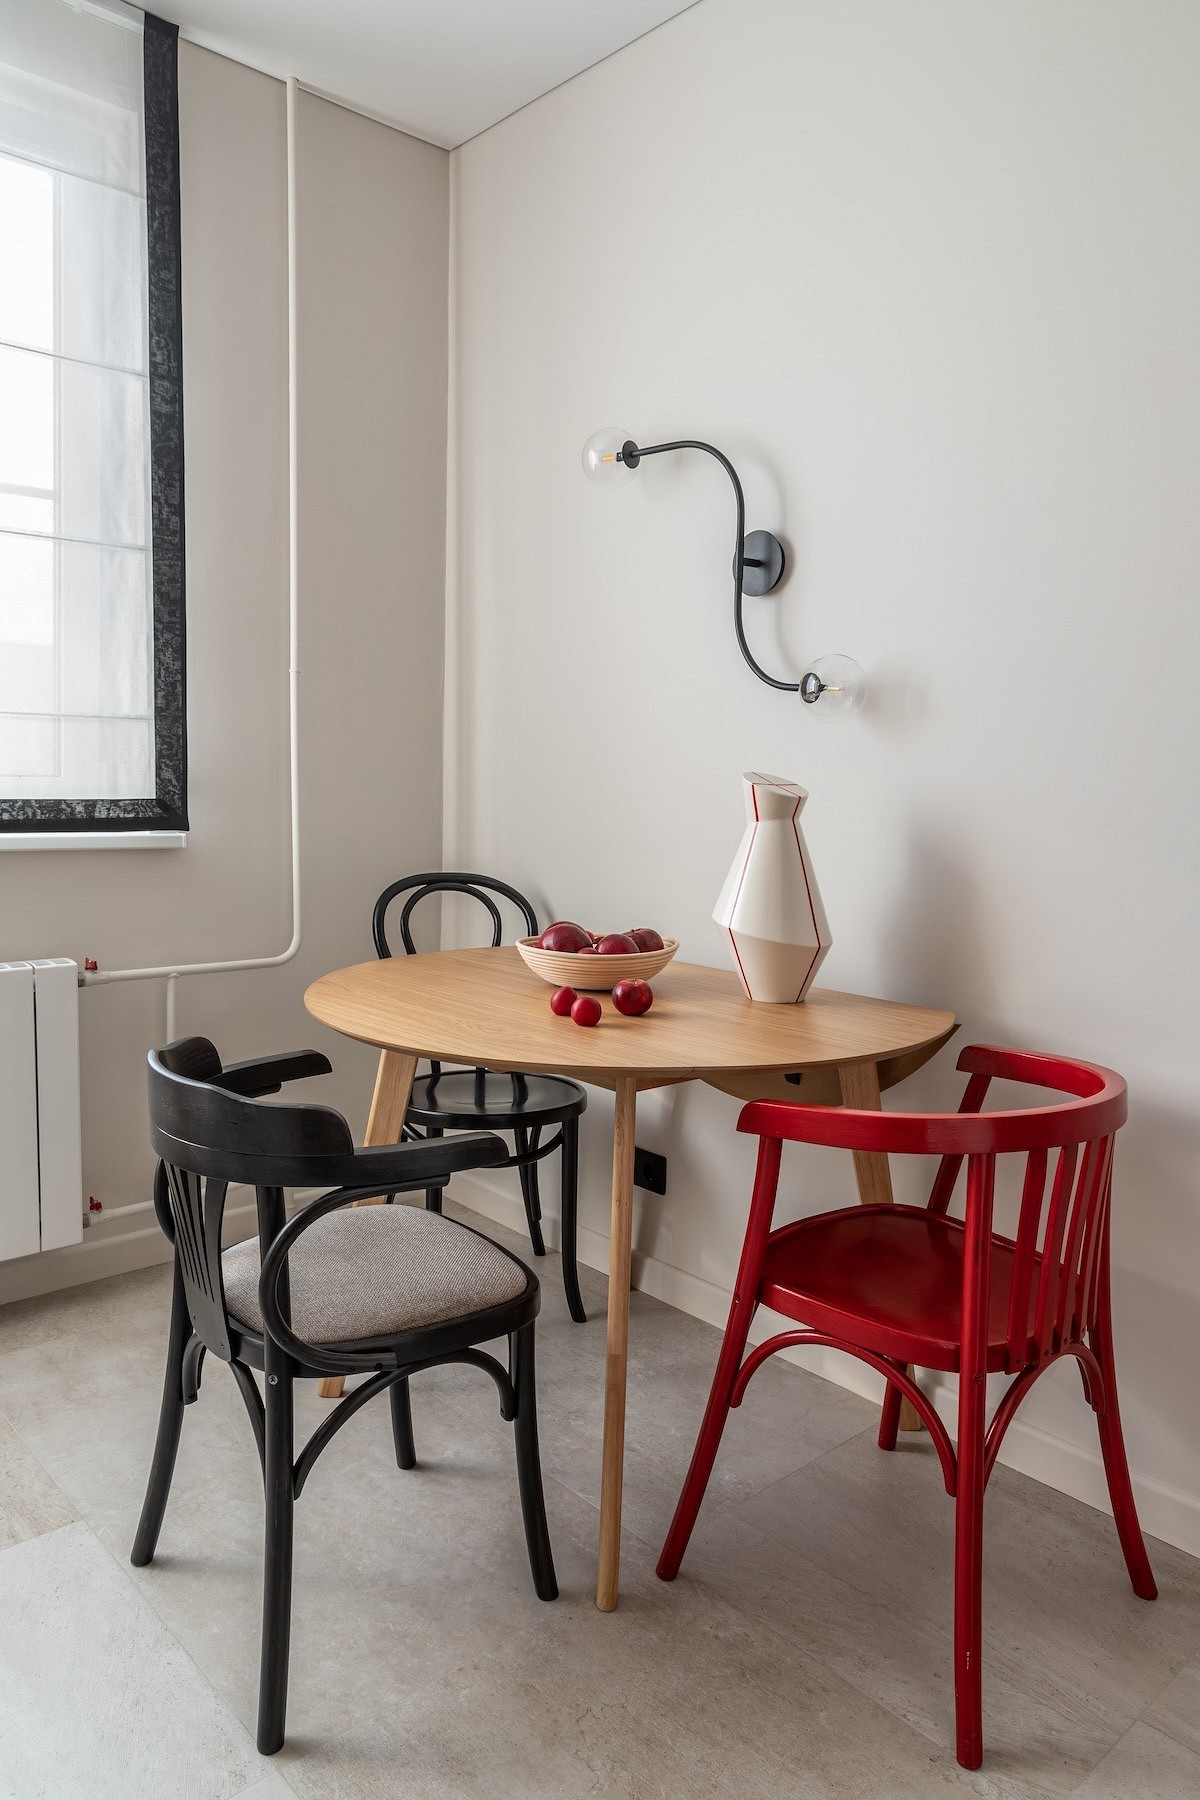 Как поставить стол на маленькой кухне? 8 вариантов с планировками от дизайнеров24